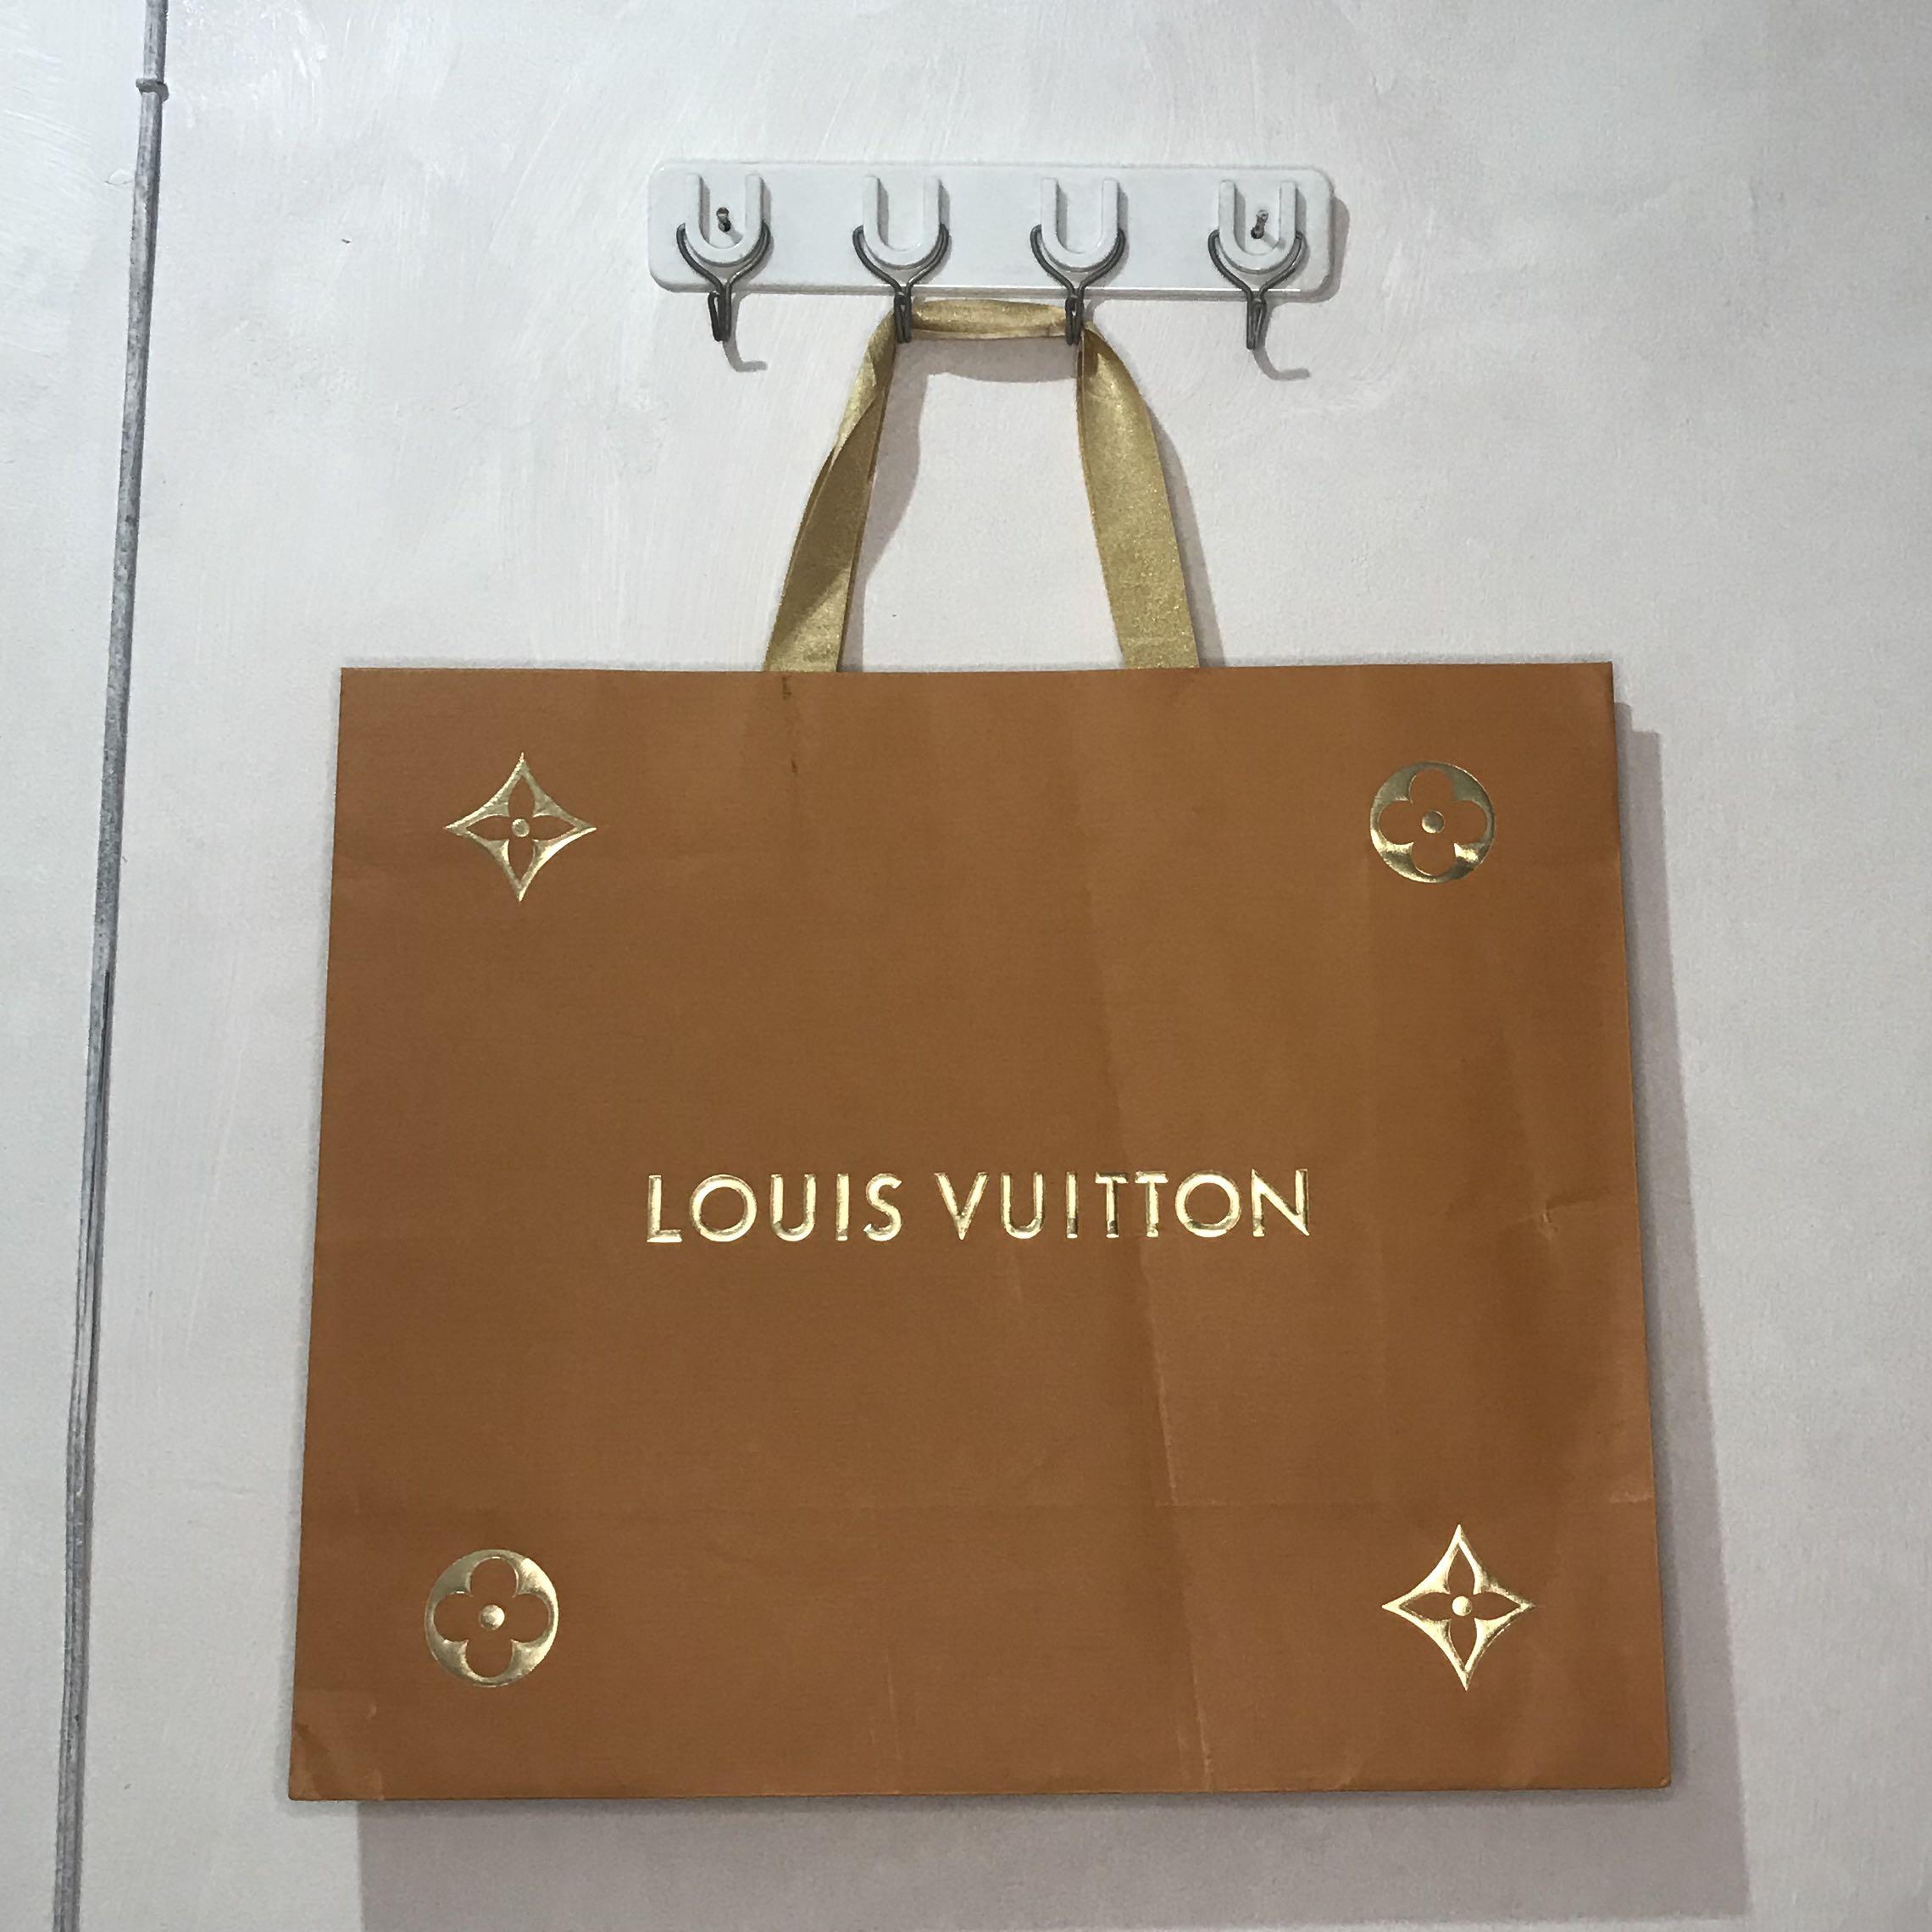 Louis Vuitton, Bags, Summer Saleauthentic Louis Vuitton Shopping Paper Bag